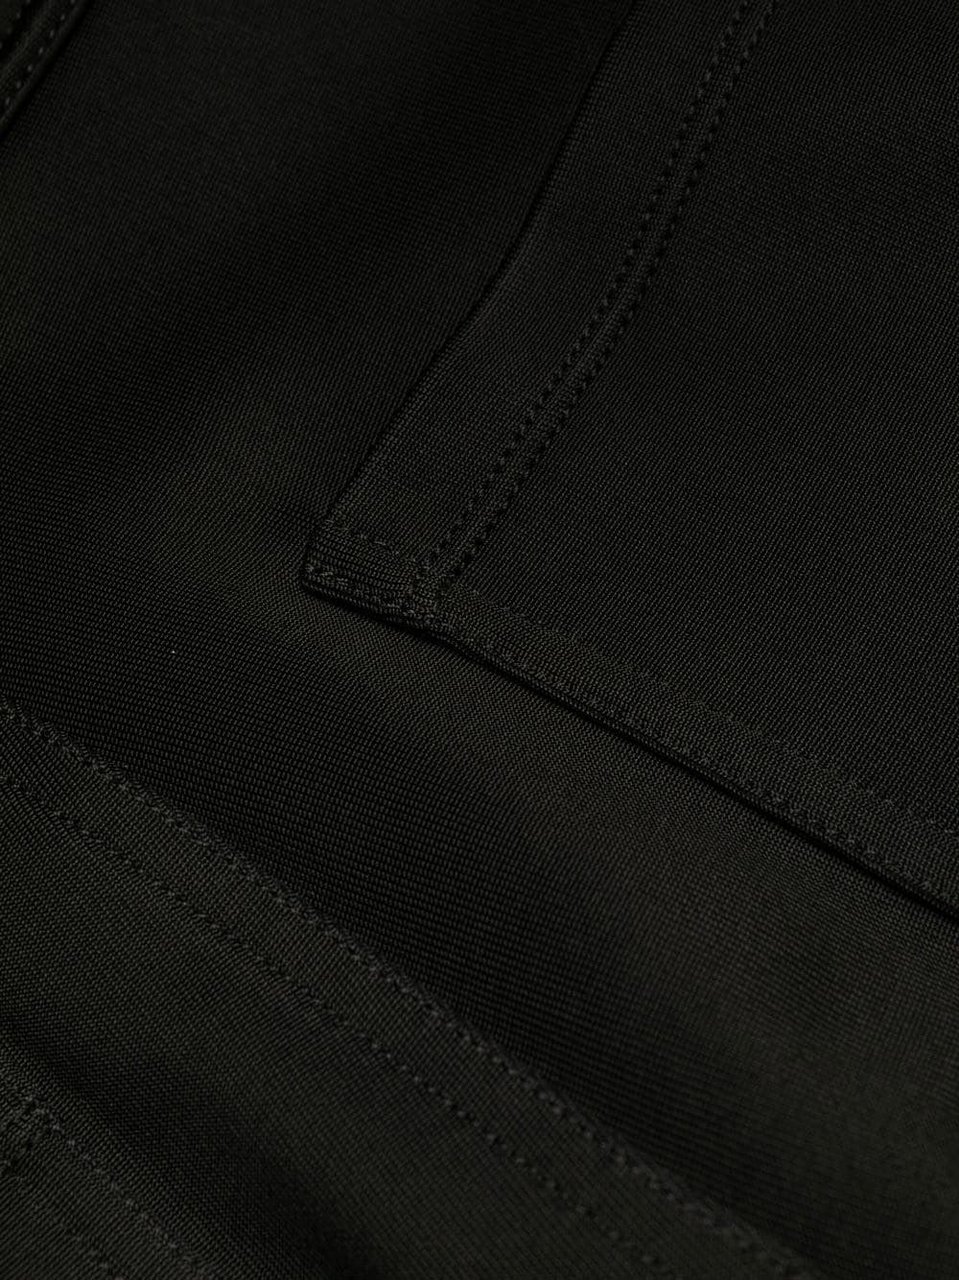 Saint Laurent Trousers Black Zwart